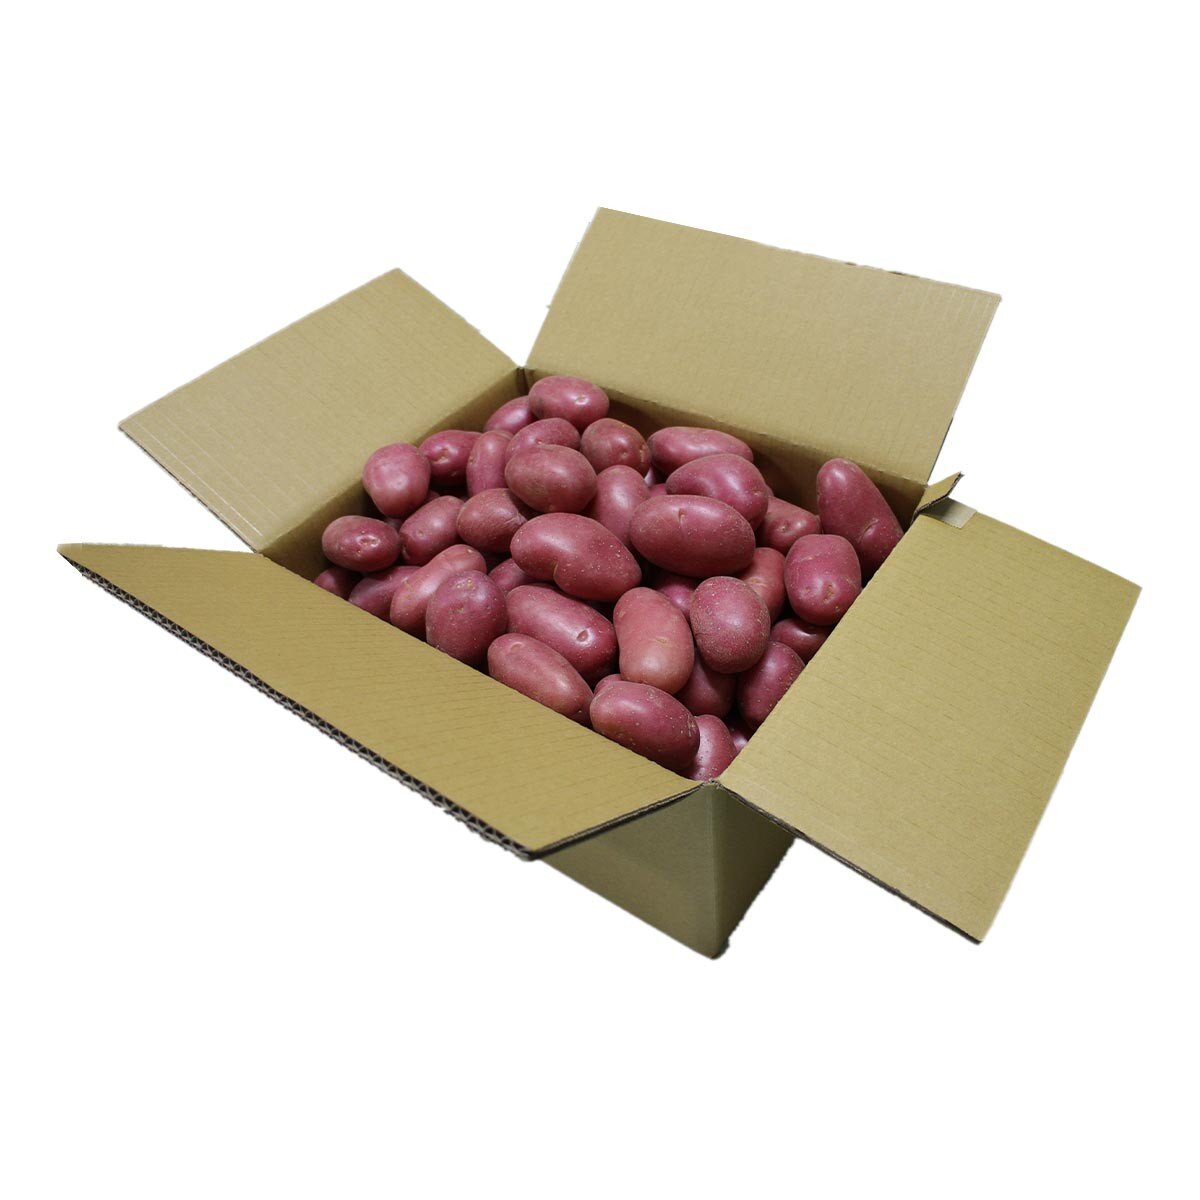 澳洲紅皮馬鈴薯 10公斤